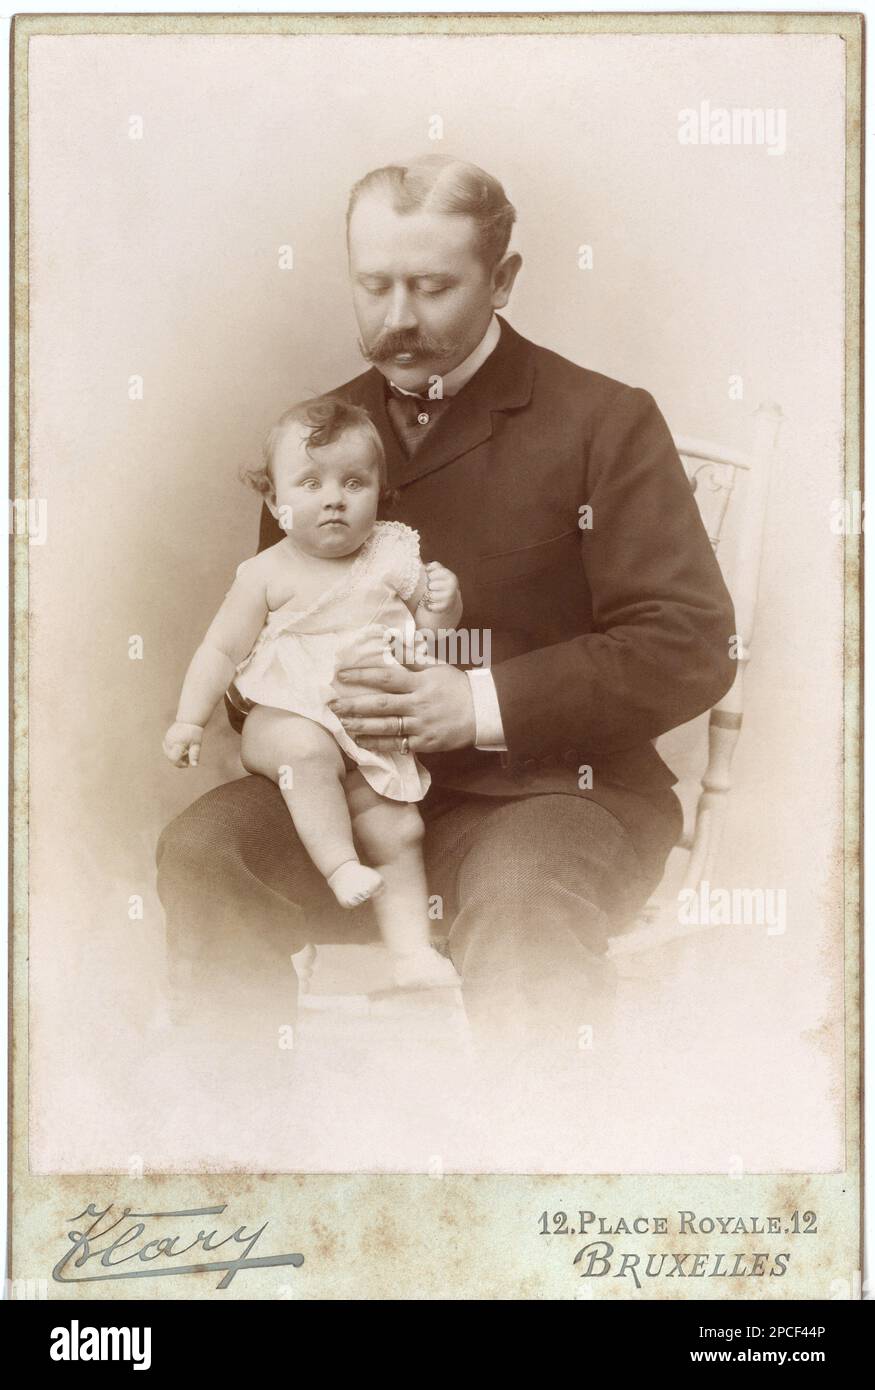 1885 Ca , BRUXELLES , BELGIEN : Ein kleiner Junge mit seinem Vater. Foto: Klary , Brüssel . Unidentifizierte Patientennamen. Dieses Foto stammt aus dem Album der Familie des französischen Barons Ernest De La Grange ( 1854 - 1899 ) und seiner Frau baronesse Clementine de Chaumont-Quitry ( 1863 - 1944 ) - PORTRAIT - RITRATTO - PADRE E FIGLIO - PAPA' - FOTO STORICHE - GESCHICHTSFOTOS - - - BAMBINO - BAMBINI - CHILD - BEBE - BABY - CHILDREN - BOTTOCENTO - 800 'S - '800 - FASHION - MODA - KRAWATTE - CRAVATTA - BAFFI - SCHNURRBART - FAMIGLIA - FAMILIE - KINDHEIT - FIGLIO - SOHN - nobili - Nobiltà - Adel Stockfoto